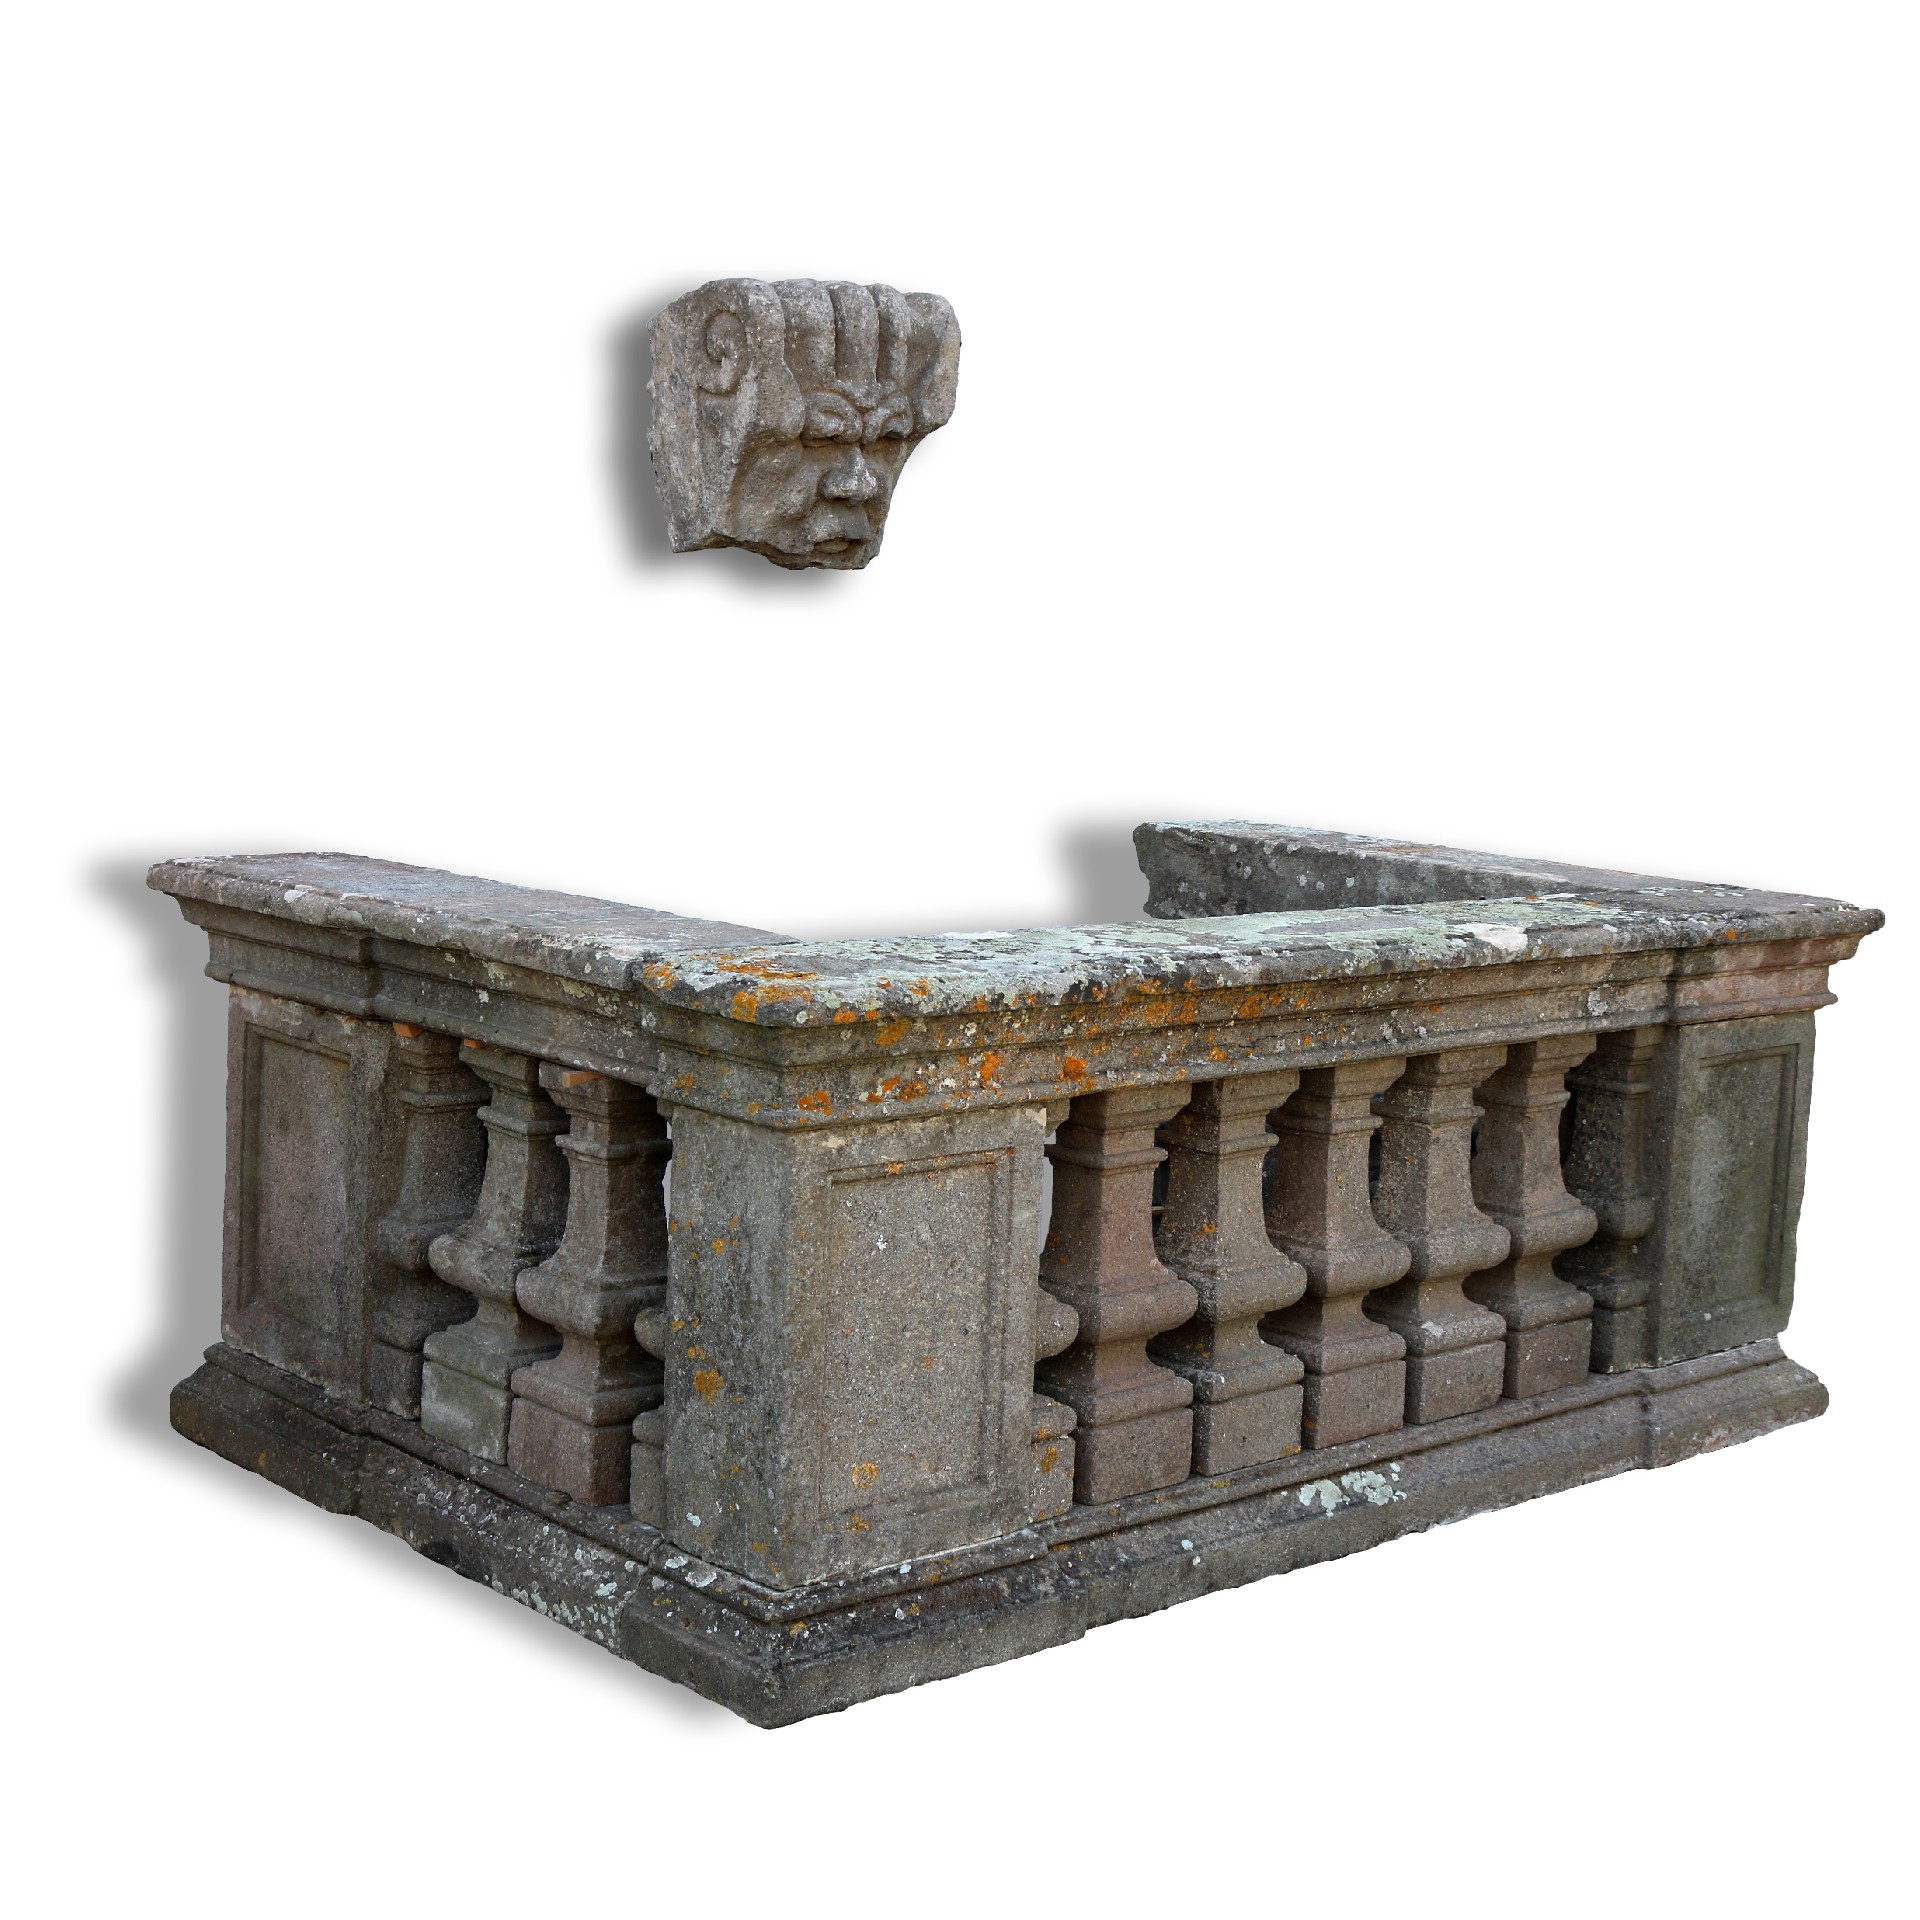 Importante Fontana antica in pietra. Epoca 1400 - 1600. - Fontane Antiche - Arredo Giardino - Prodotti - Antichità Fiorillo